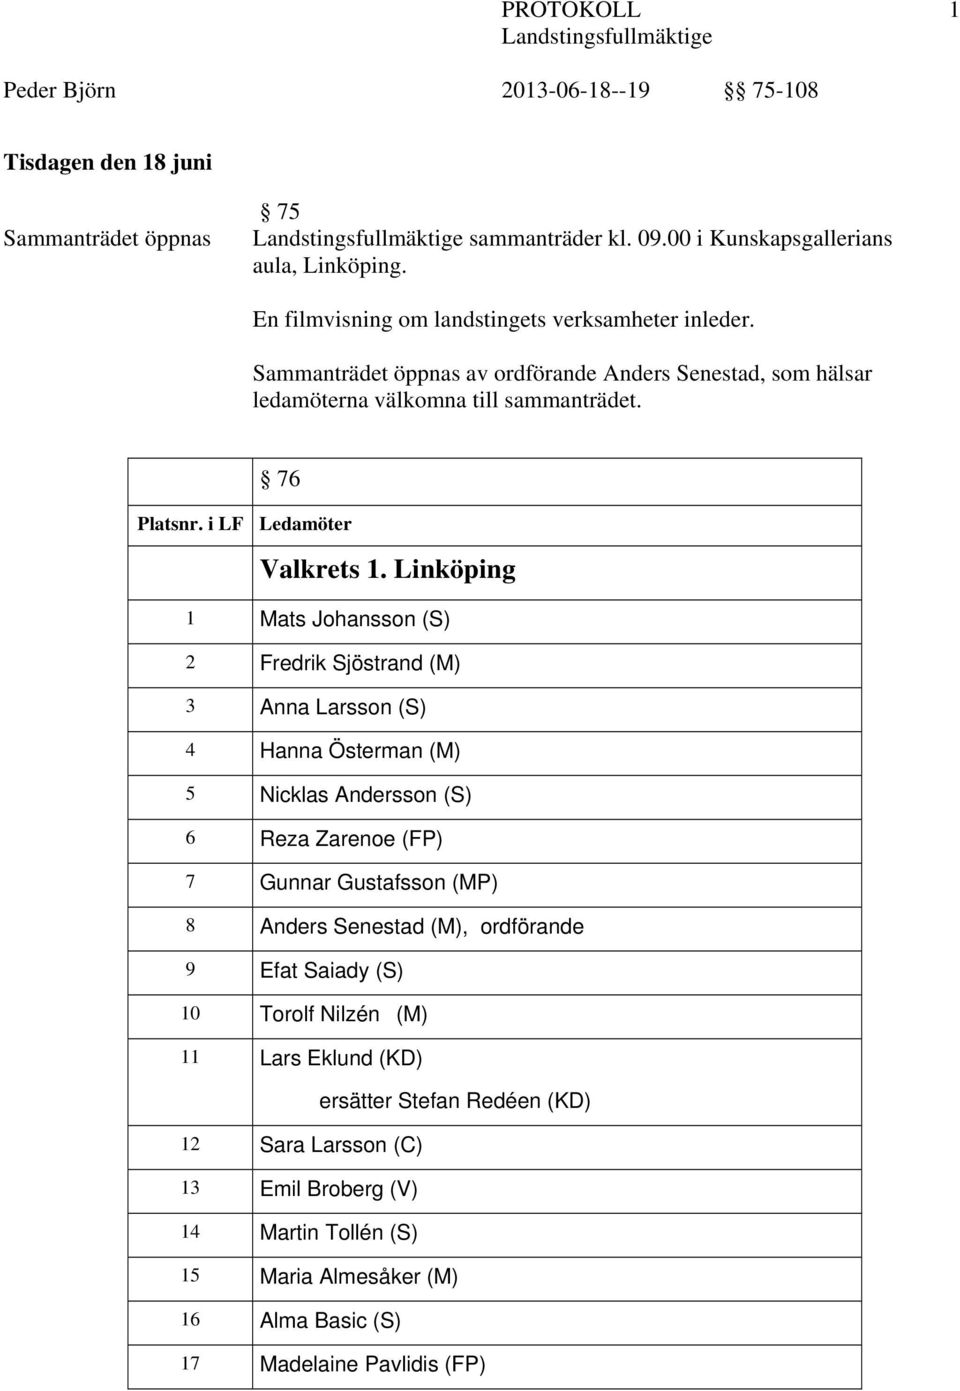 Linköping 1 Mats Johansson (S) 2 Fredrik Sjöstrand (M) 3 Anna Larsson (S) 4 Hanna Österman (M) 5 Nicklas Andersson (S) 6 Reza Zarenoe (FP) 7 Gunnar Gustafsson (MP) 8 Anders